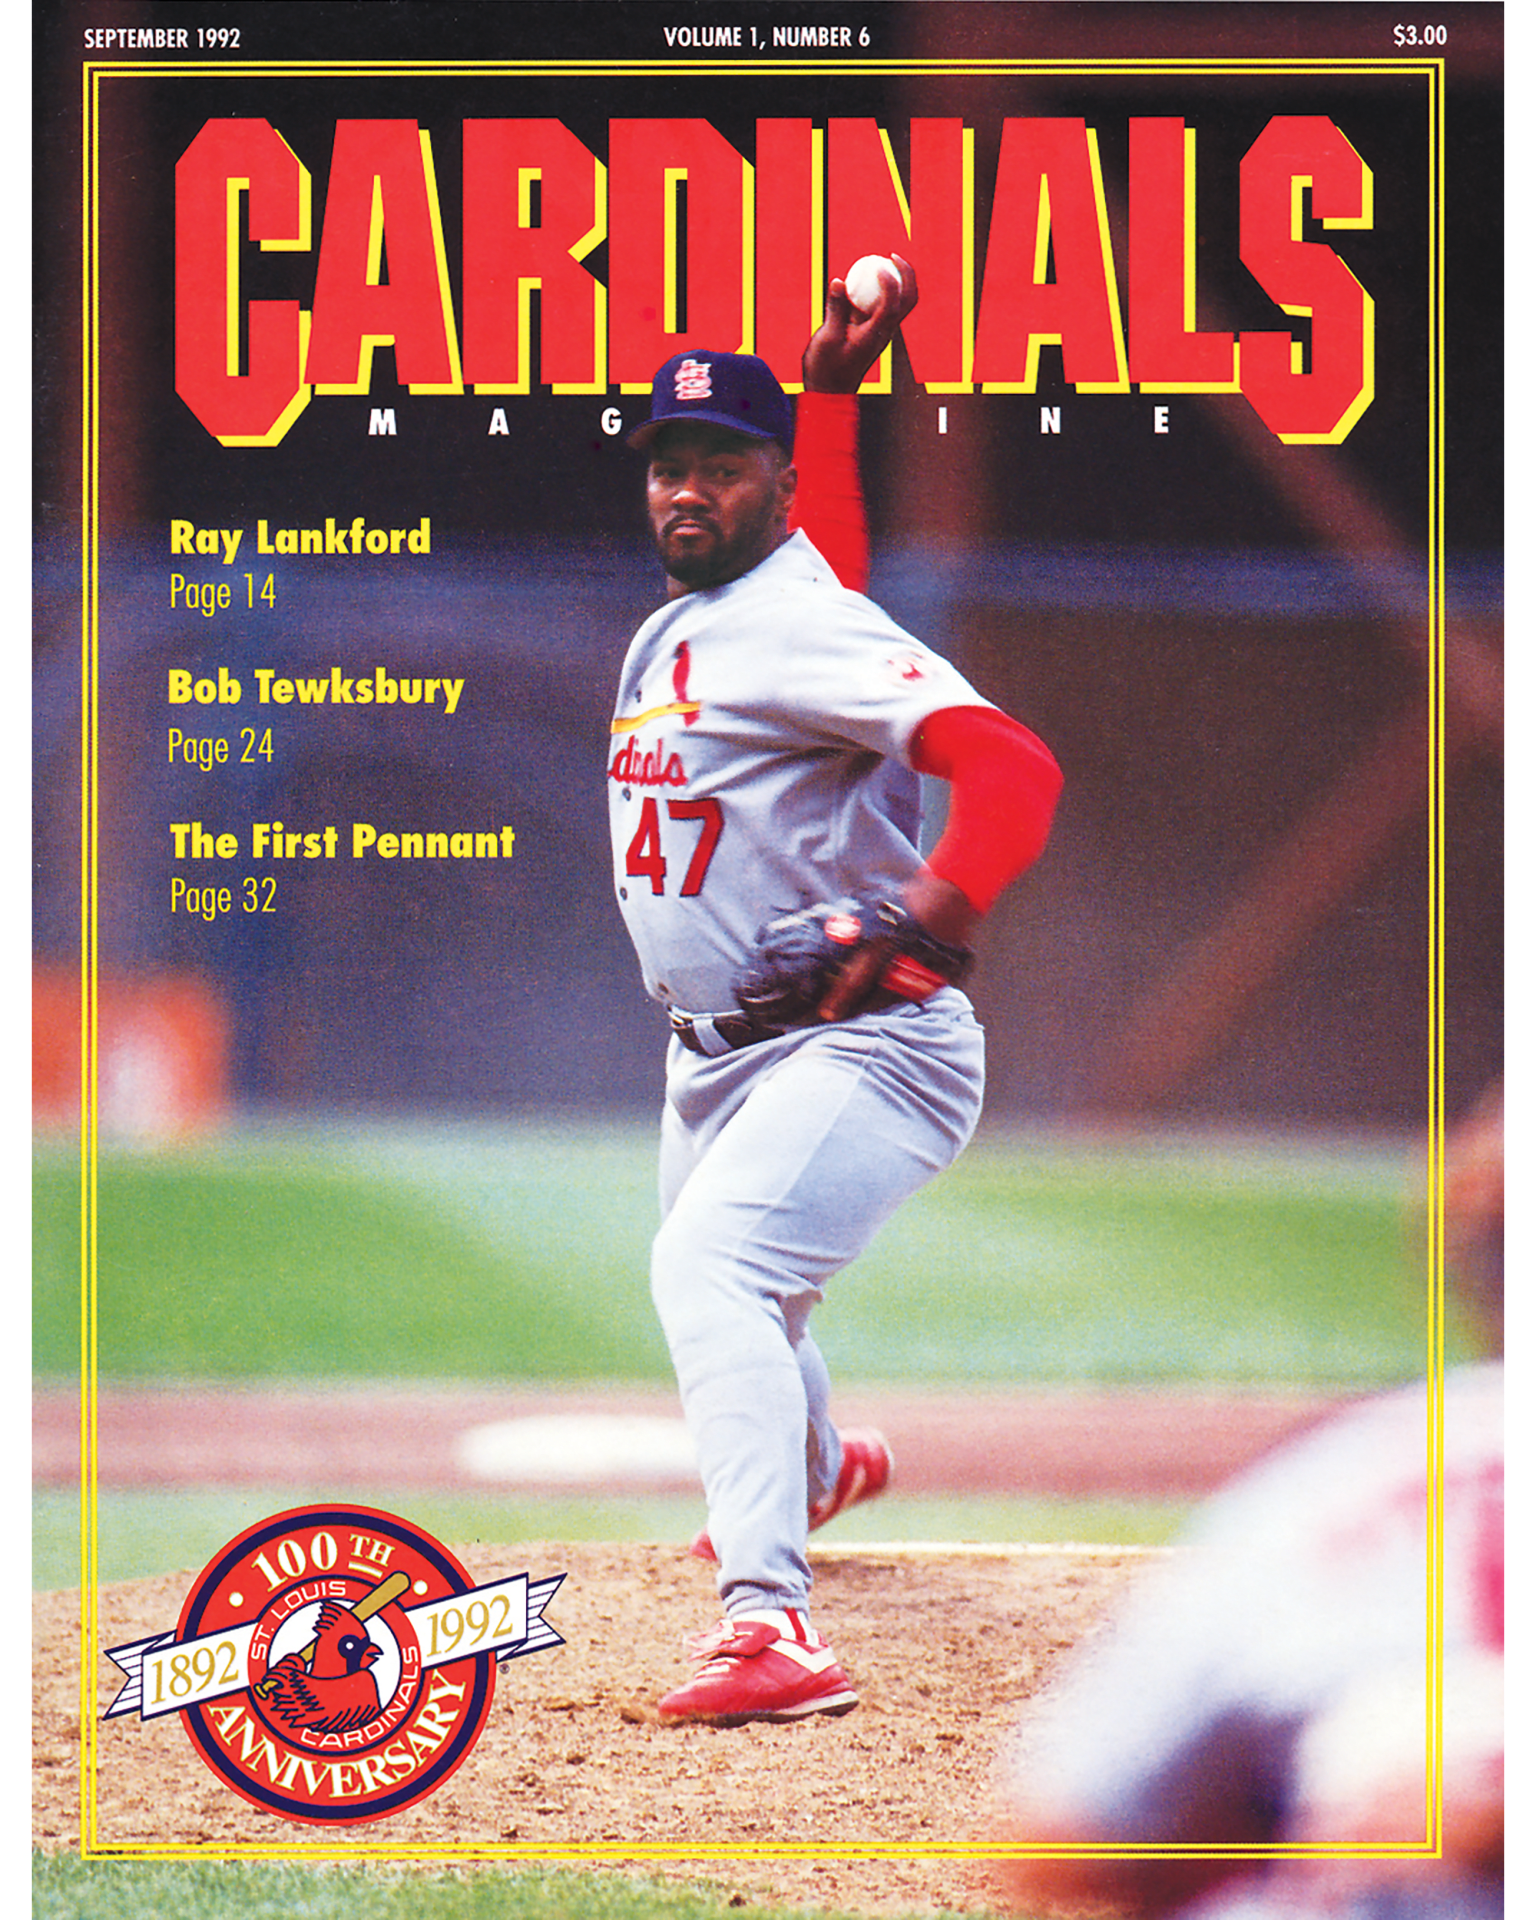 1992-1995 Cardinals – Cardinals Uniforms & Logos